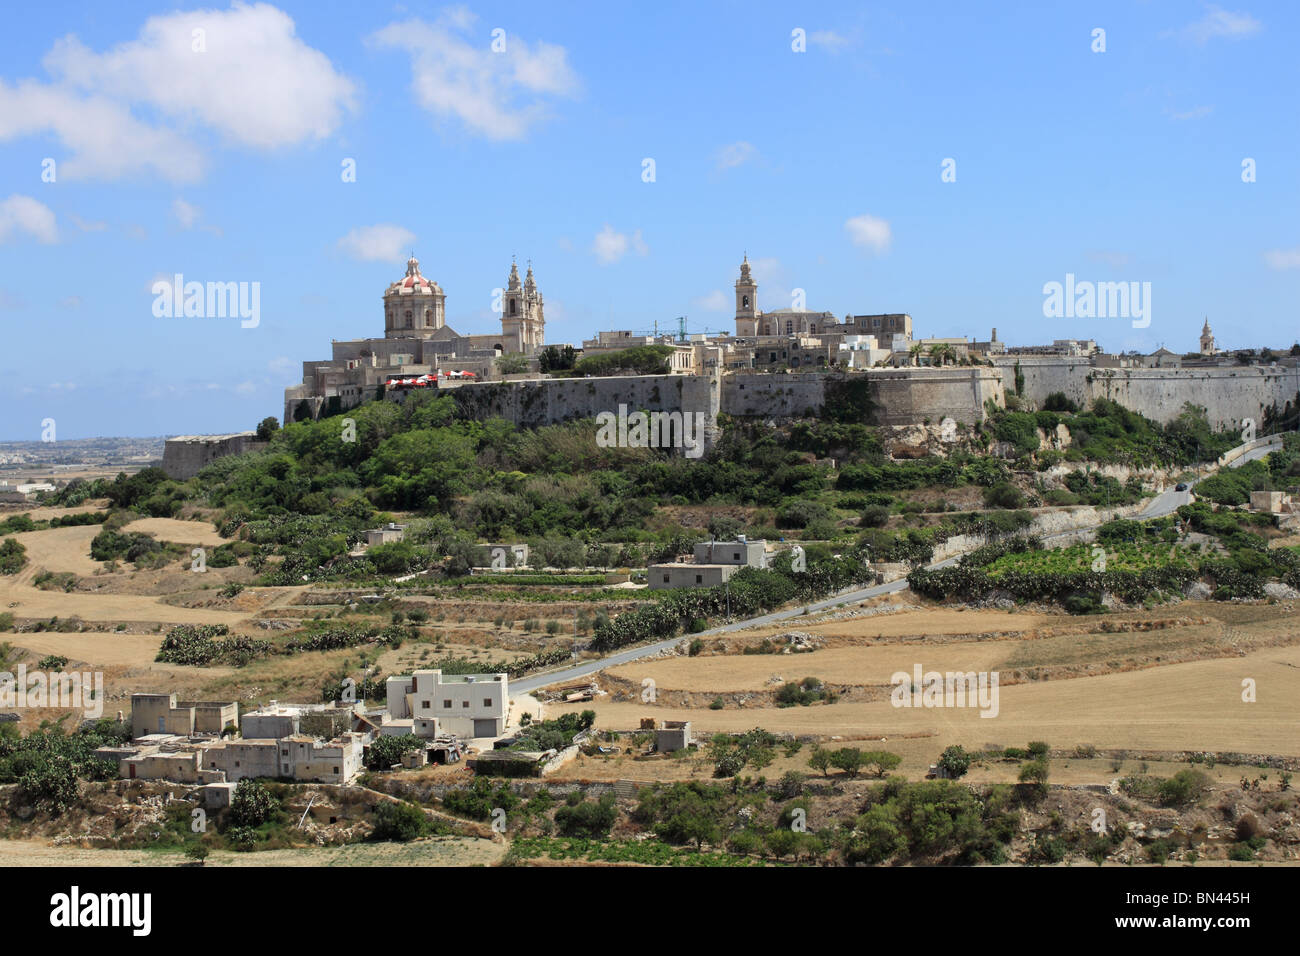 Ville fortifiée de Mdina (Citta Vecchia) de Mtarfa, montrant la Cathédrale St Paul (à gauche) et les jardins de thé de Fontanella (rouge/blanc parasols). central de Malte Banque D'Images